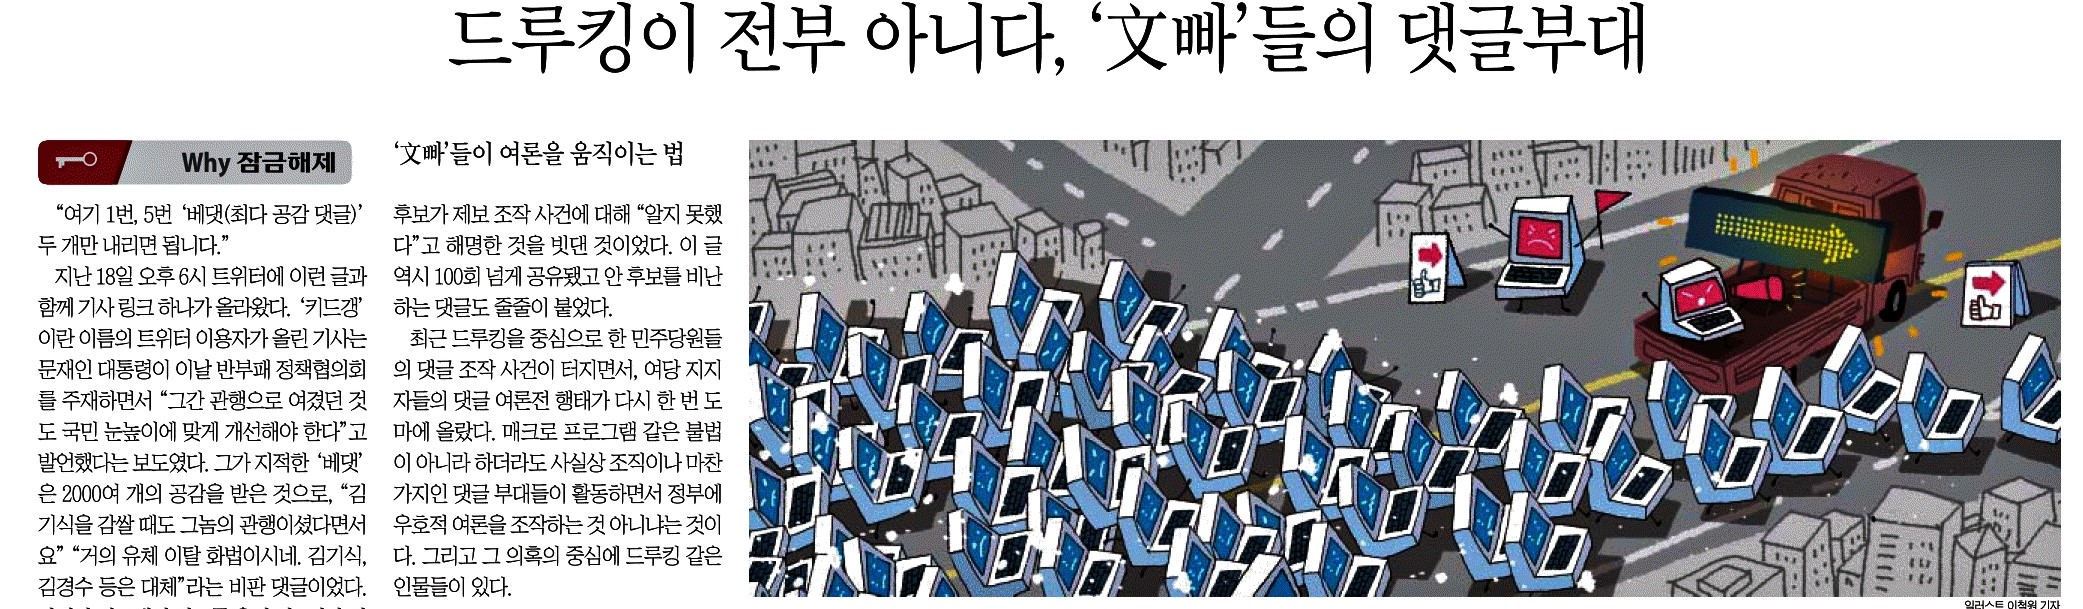 조선일보_드루킹이 전부 아니다, 文빠 들의 댓글부대_2018-04-21.jpg